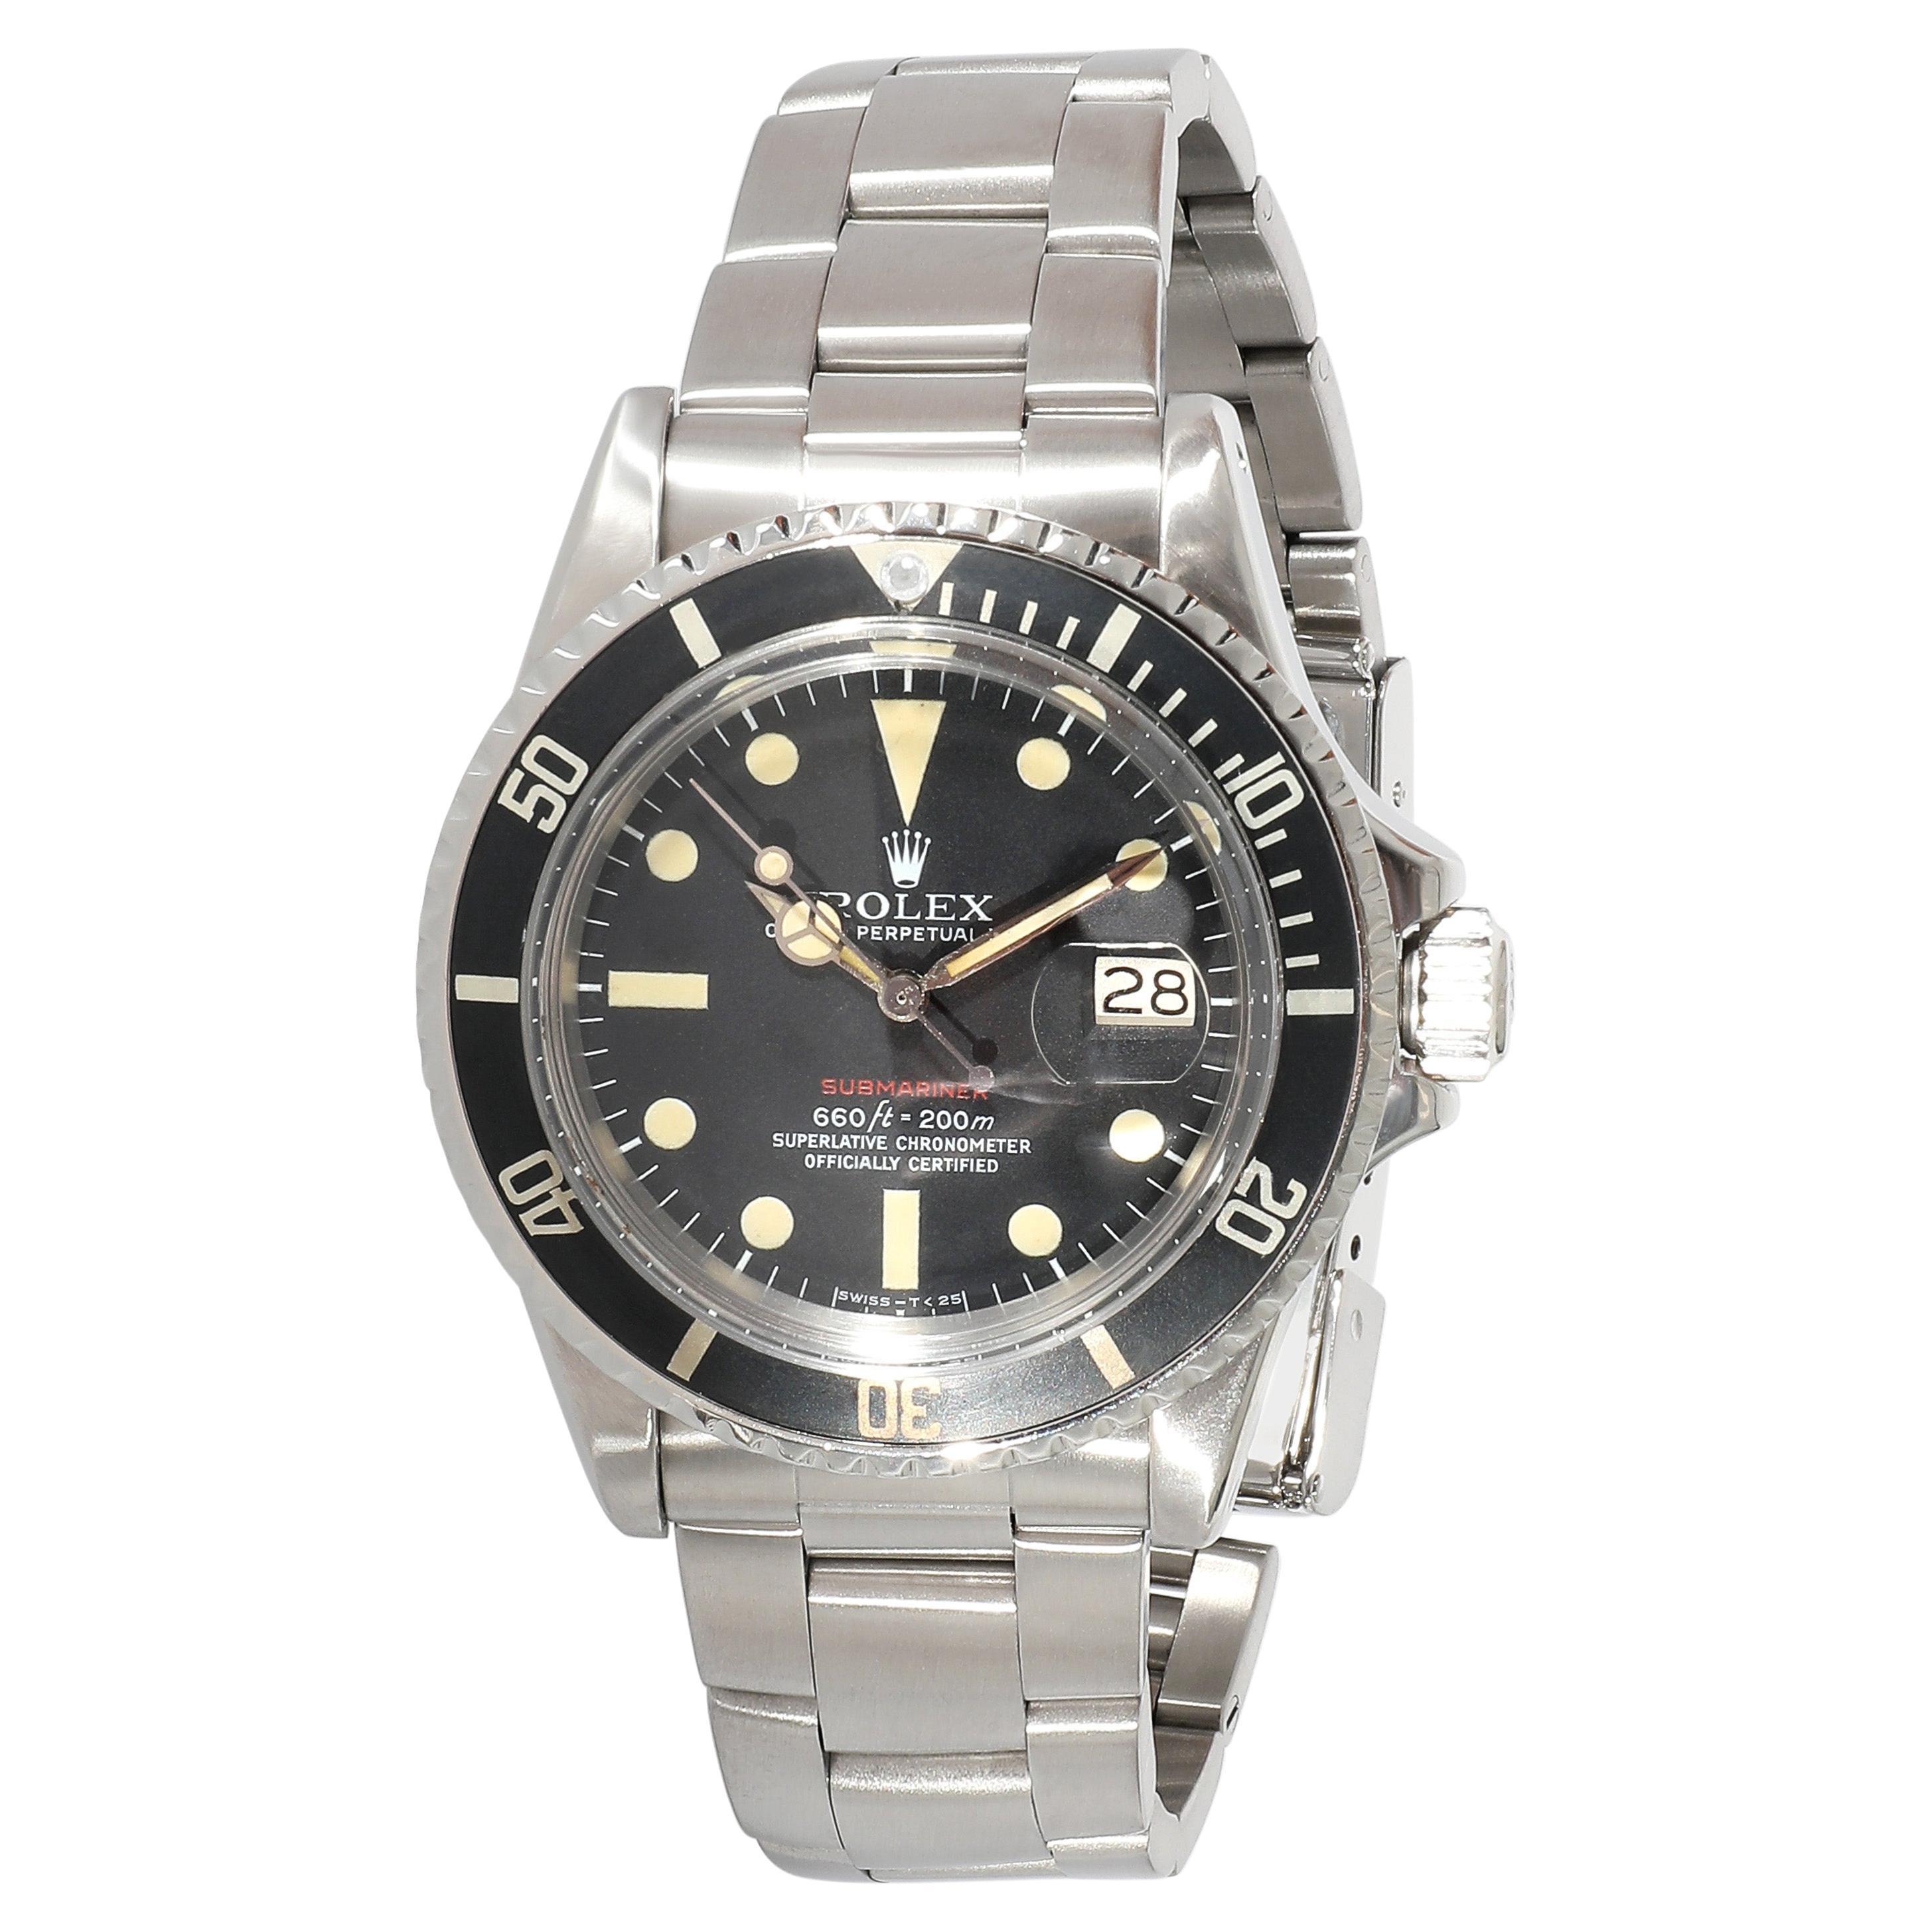 Rolex Submariner 1680 Men's Watch in  Stainless Steel